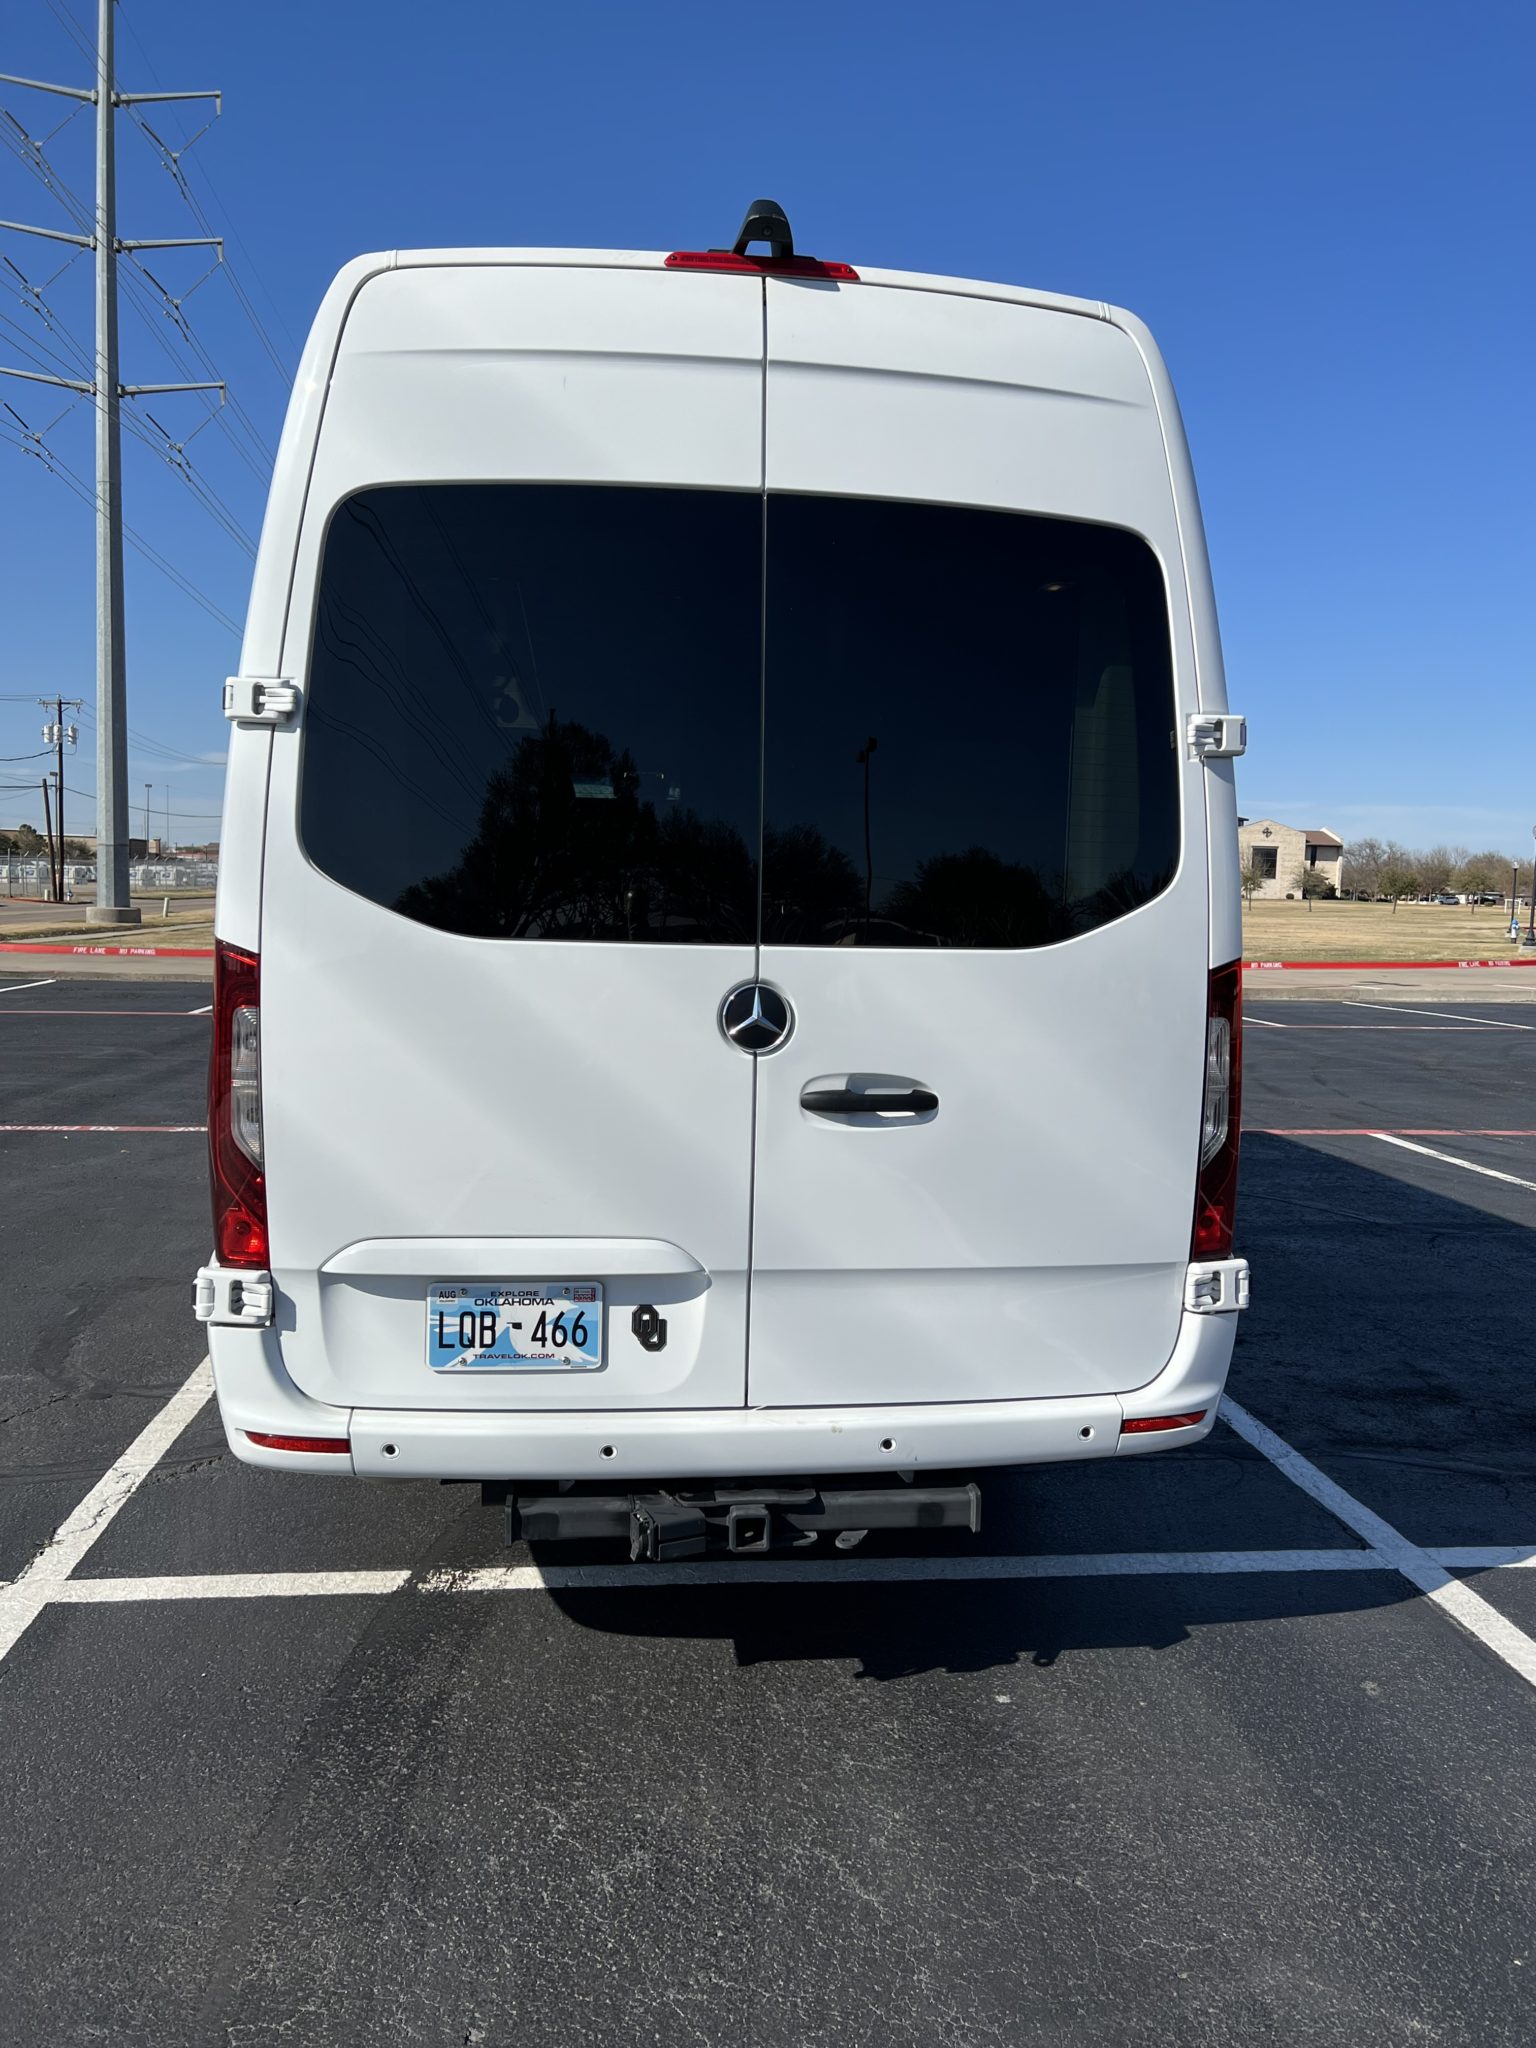 2021 Mercedes Sprinter For Sale in McKInney, Texas - Van Viewer